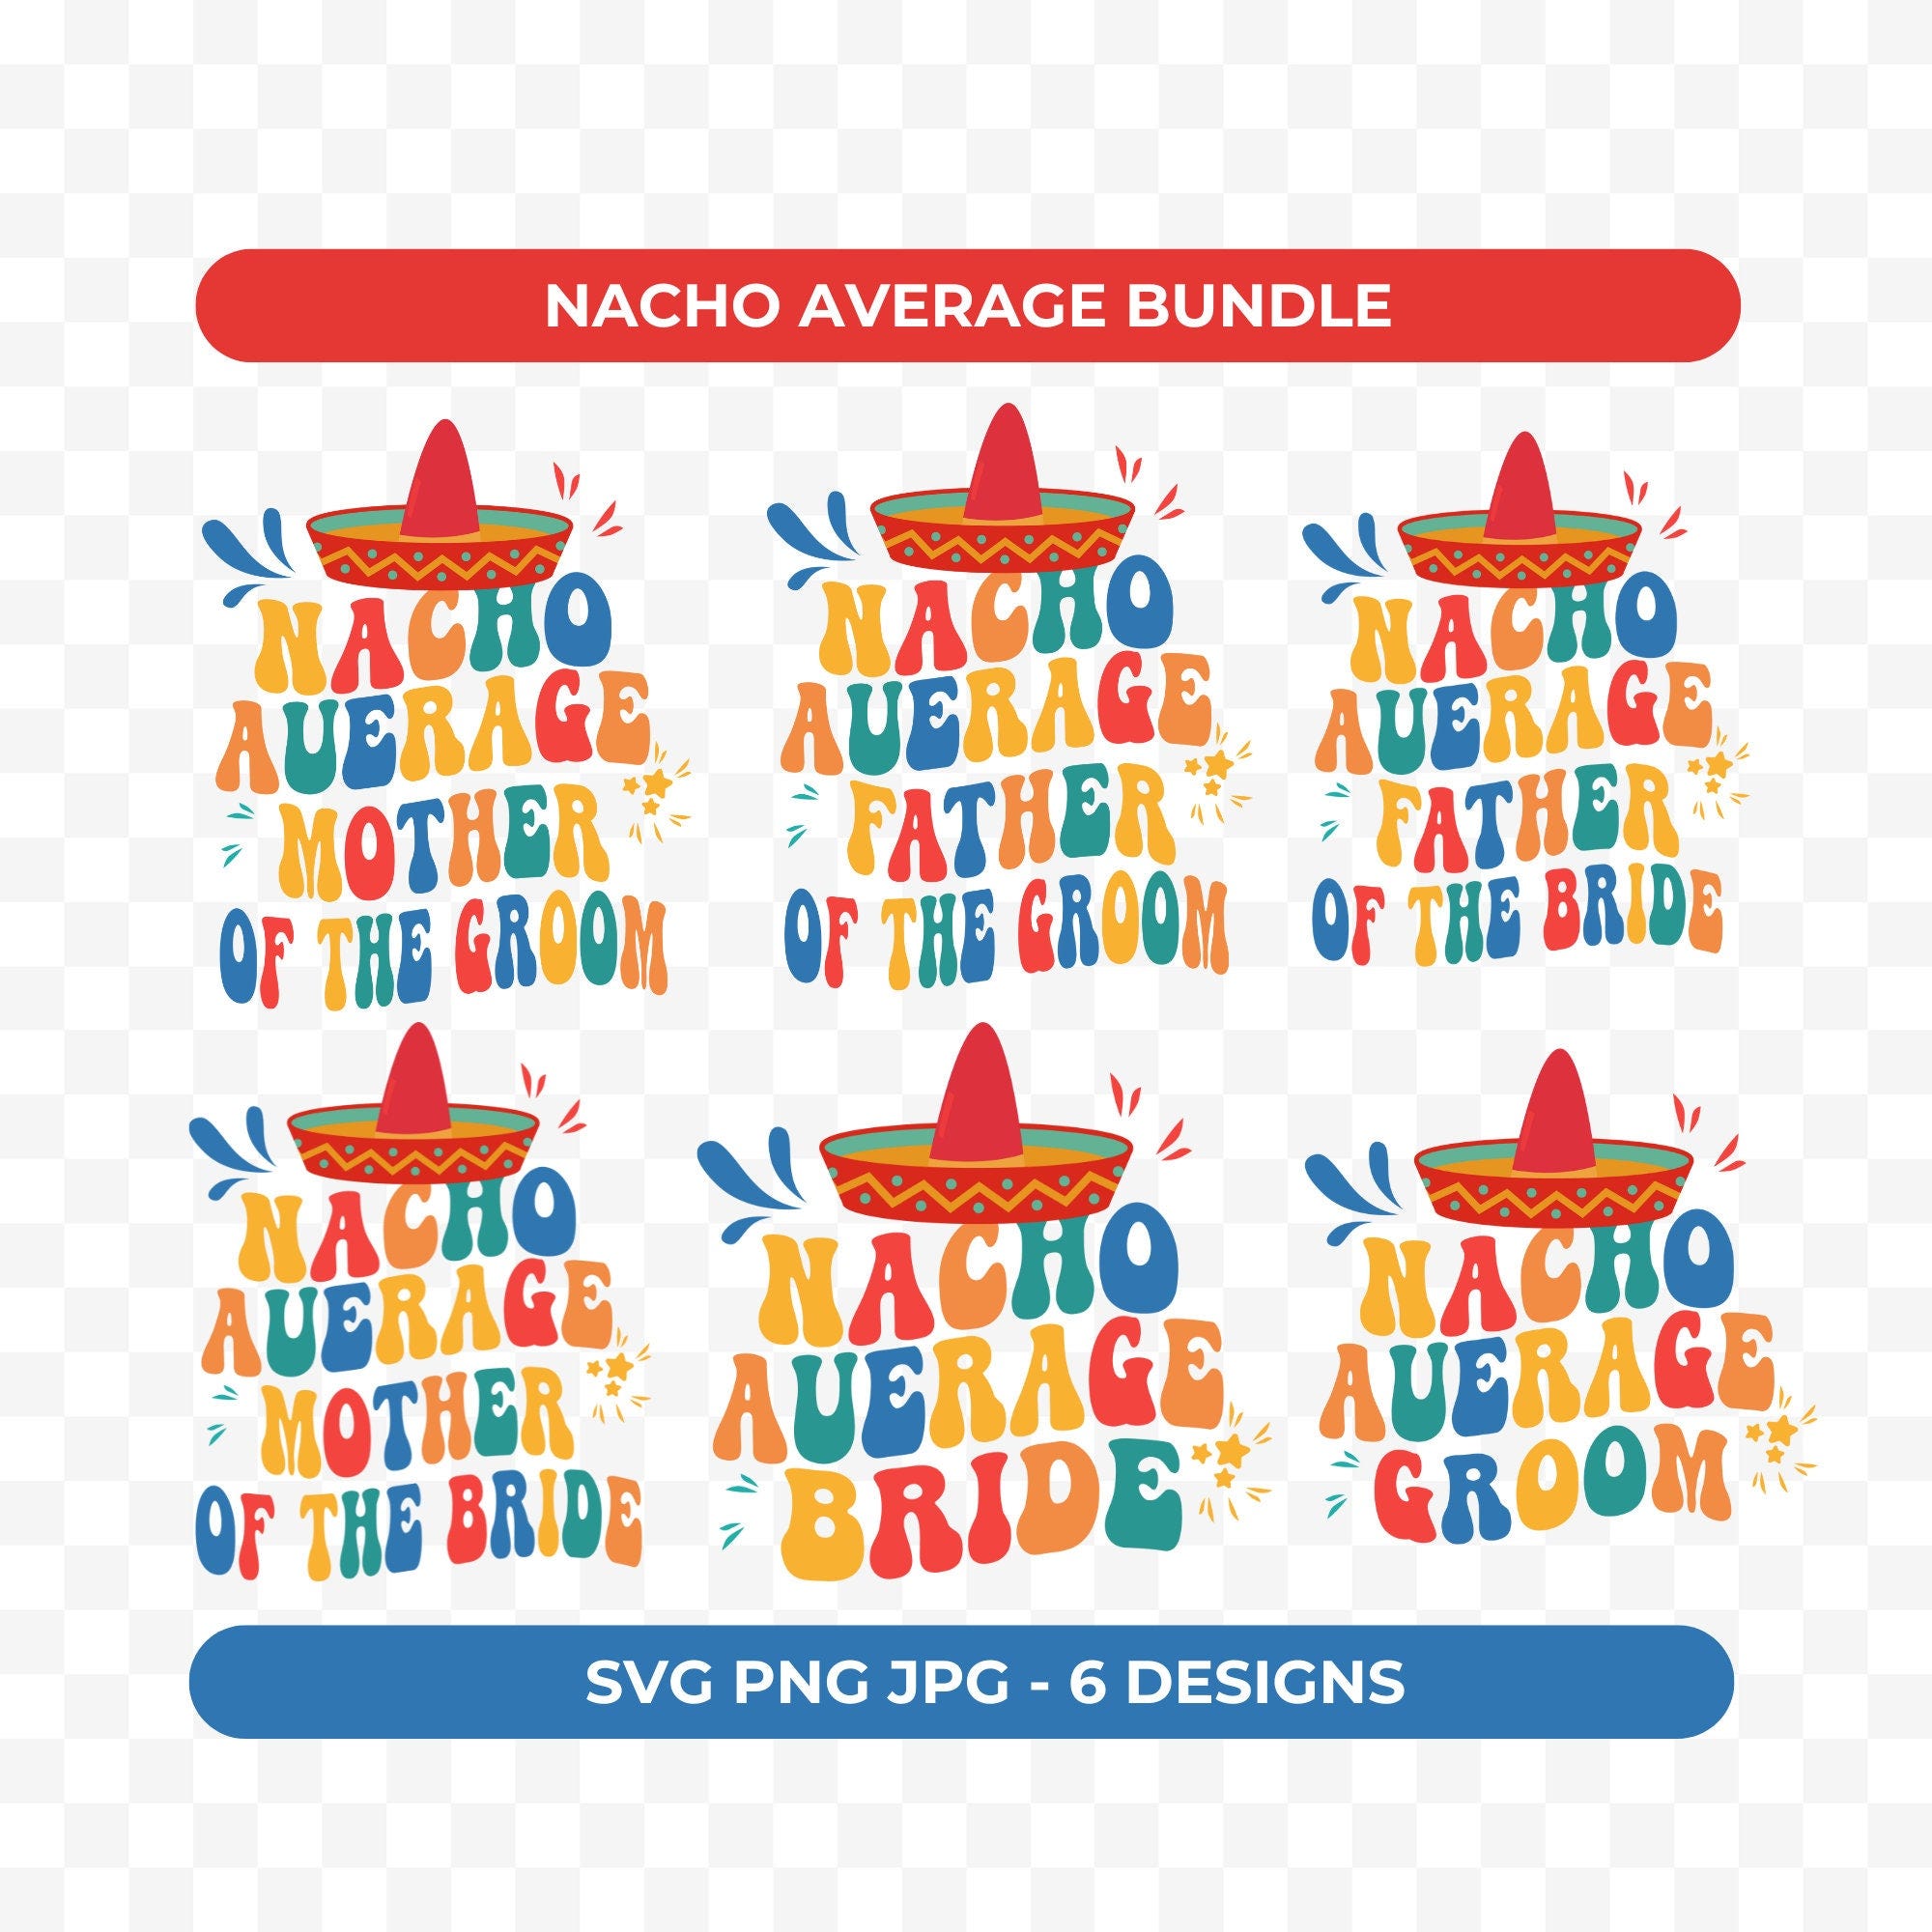 Nacho Average Bundle Svg Png, Mexican Wedding Design Bundle, Nacho Average Bride/Groom/Father/Mother Bundle, Svg Png